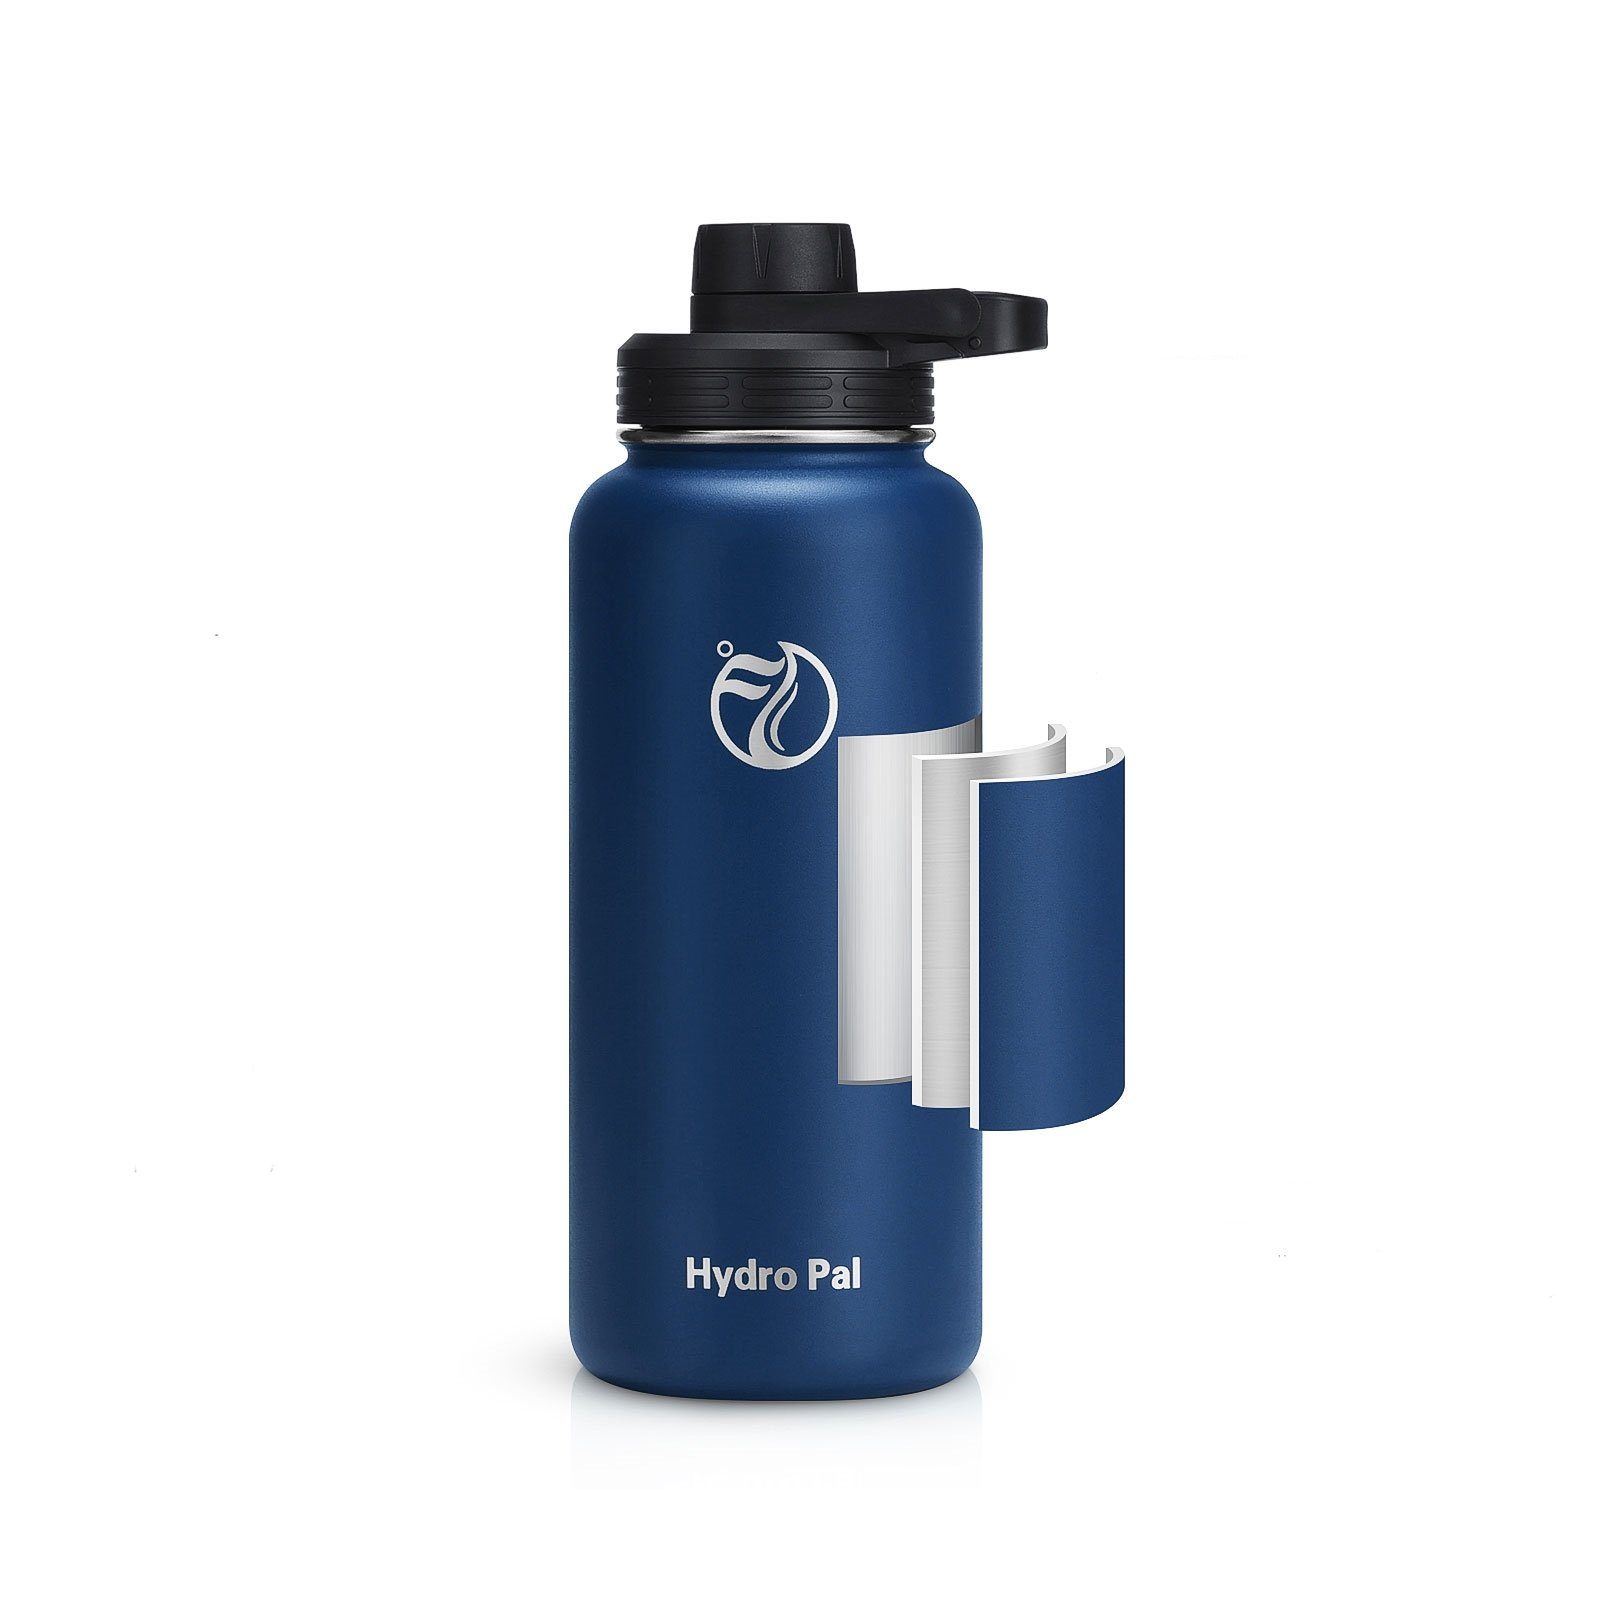 Deckel Isolierflasche BPA-Frei mit Thermosflasche Trinkflasche Auslaufsicher Isolierte 2 946ml, Strohhalm REDOM geeignet Edelstahl Dunkelblau 2 Wasserflasche Kohlensäure